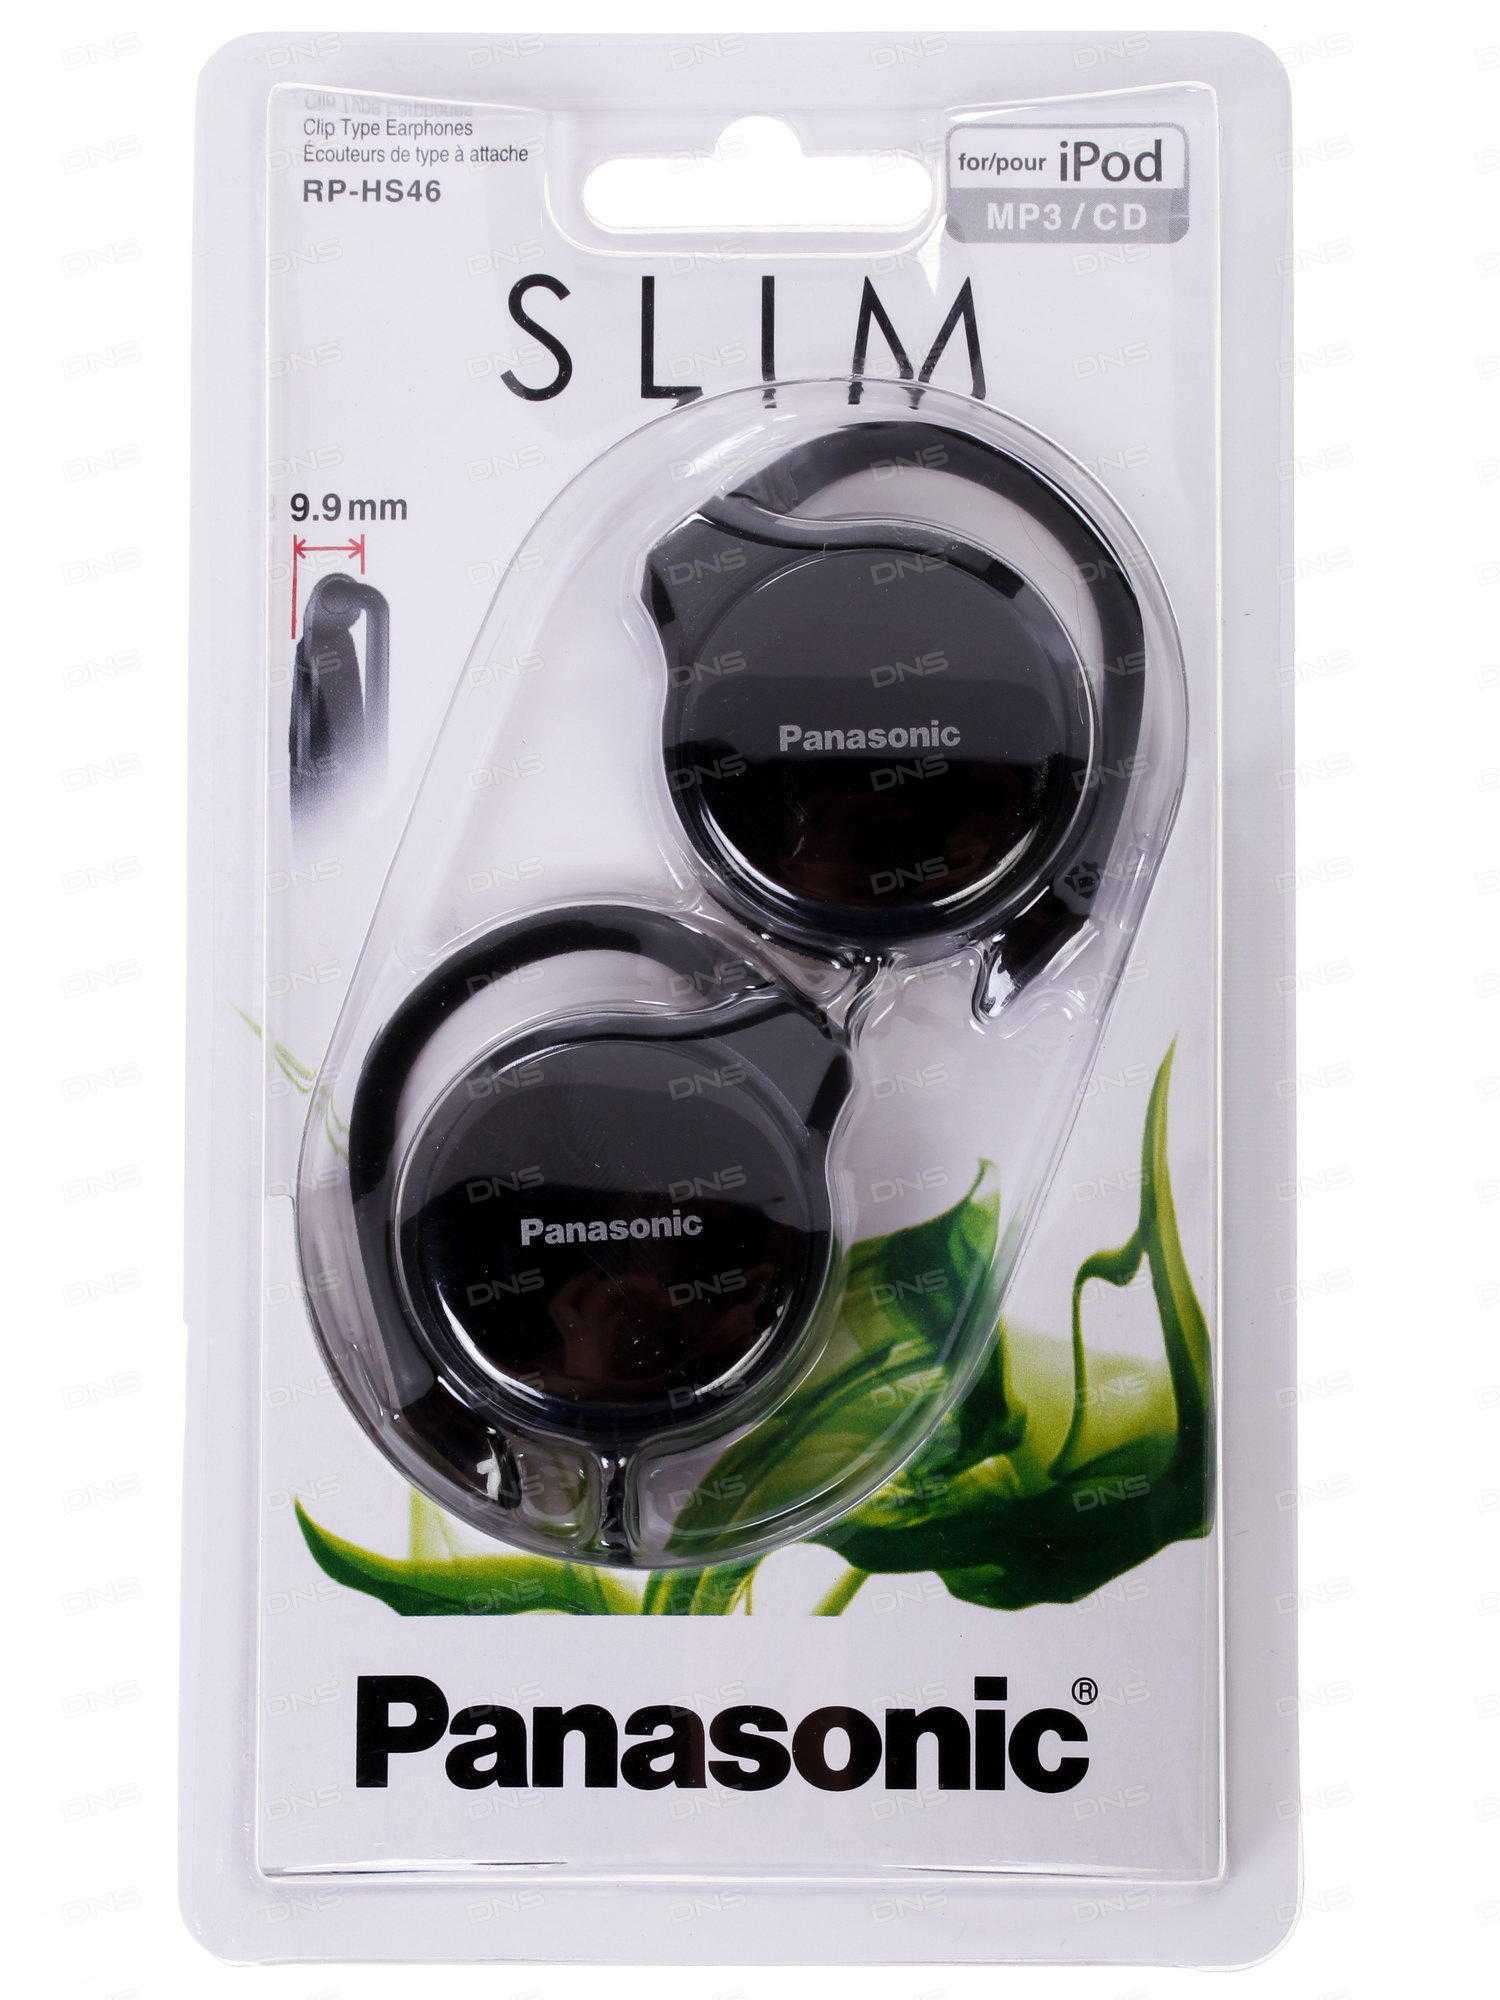 Panasonic rp-hx50 купить по акционной цене , отзывы и обзоры.